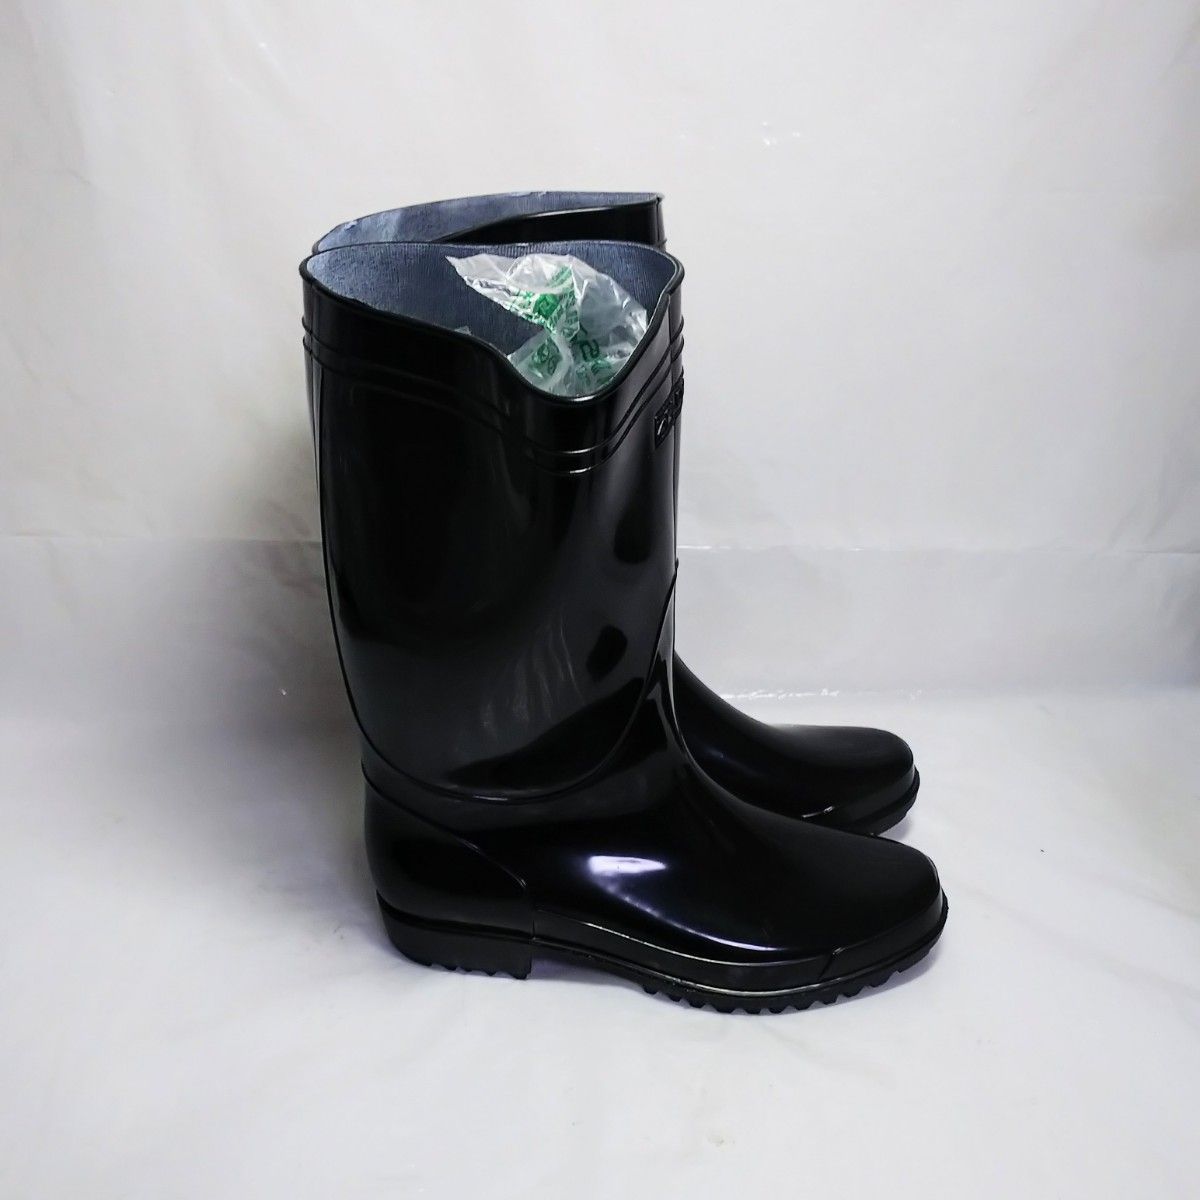 新品 ★ 26.5cm メンズ 長靴 黒 ブラック ZIPLOA ジップロア 靴 レインブーツ ロング ラバー Lサイズ